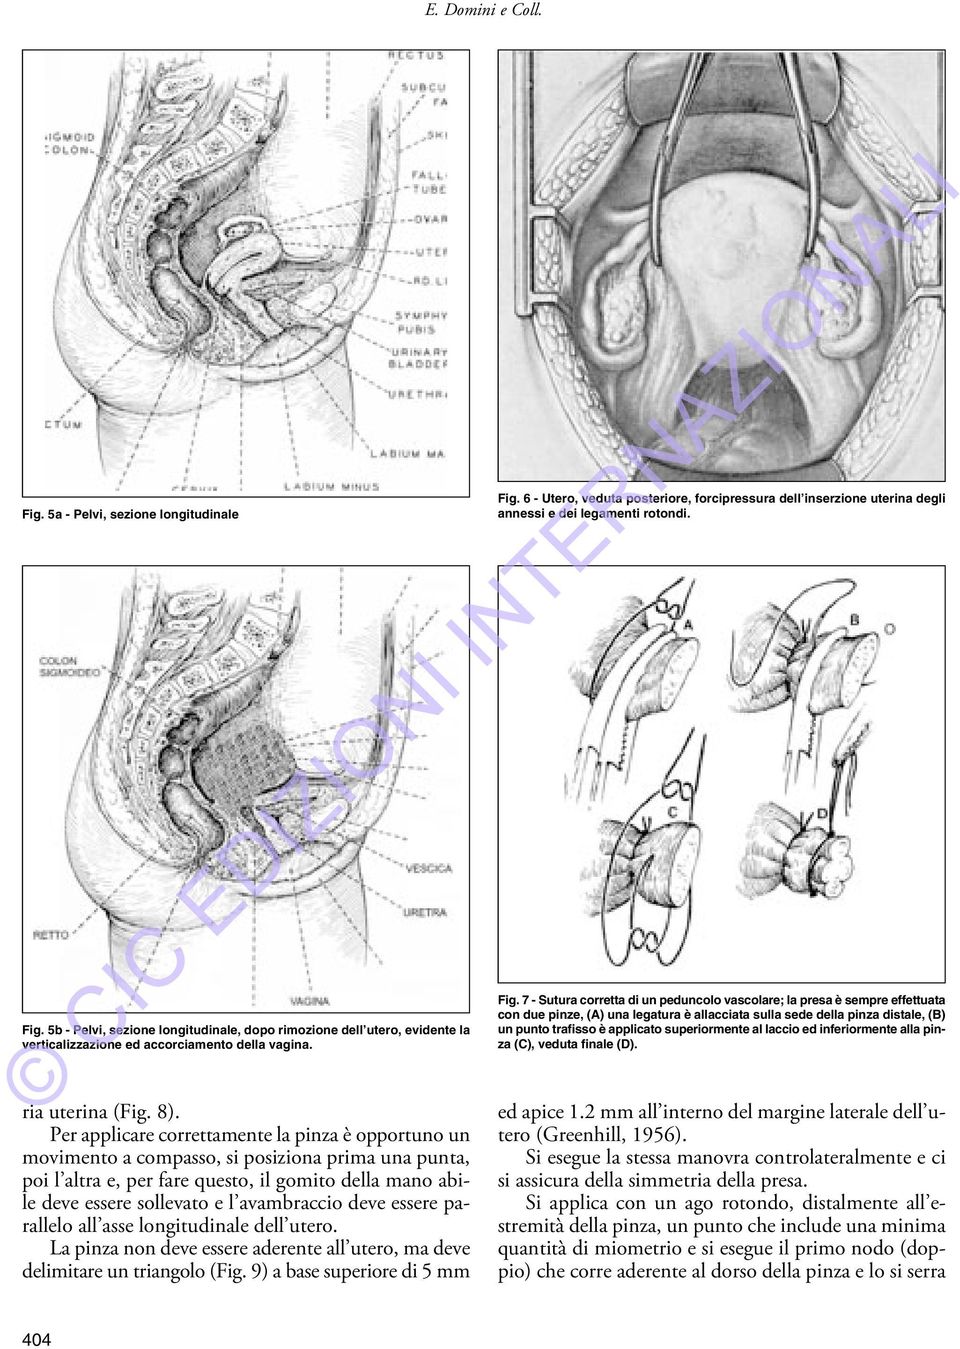 superiormente al laccio ed inferiormente alla pinza (C), veduta finale (D). ria uterina (Fig. 8).